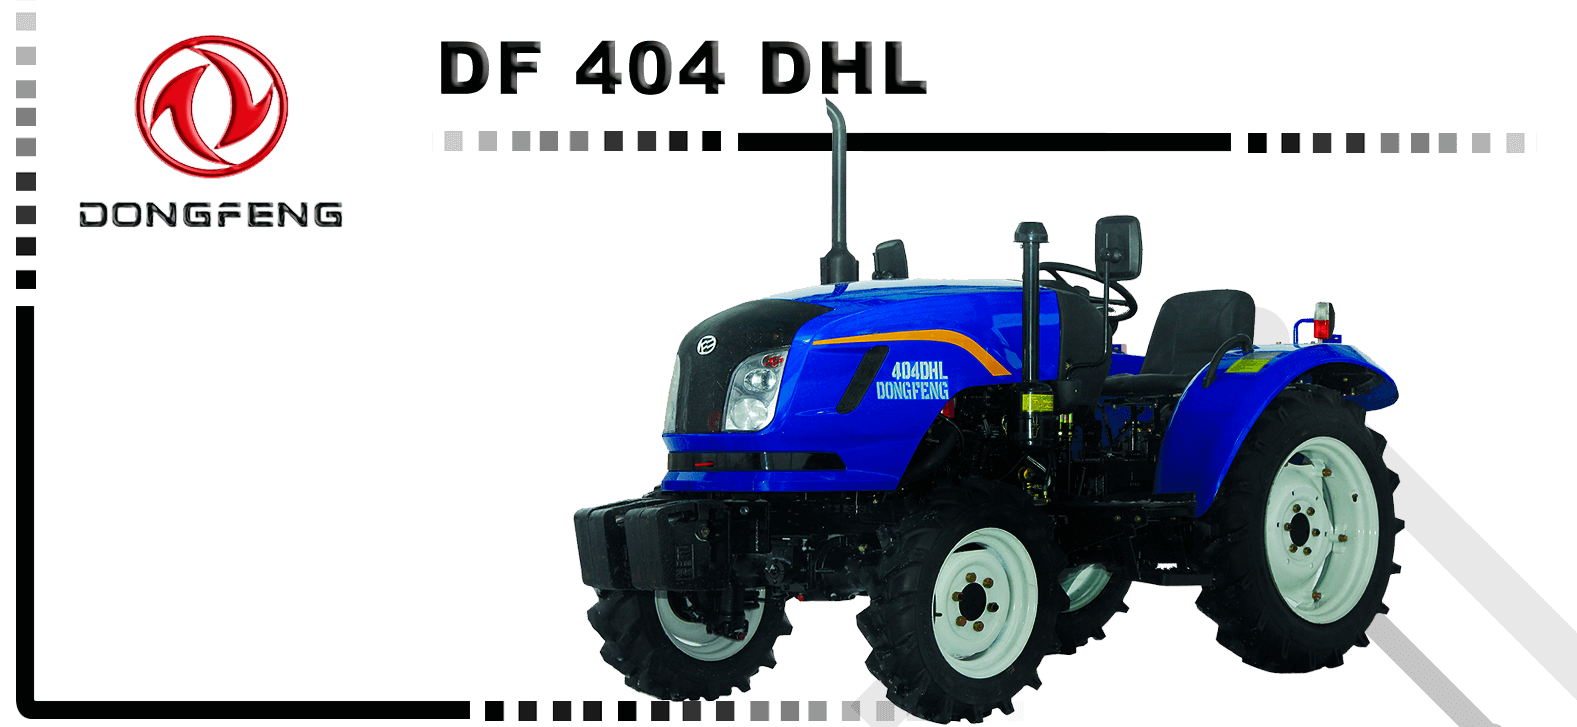 Баннер трактора DF 404 DHL